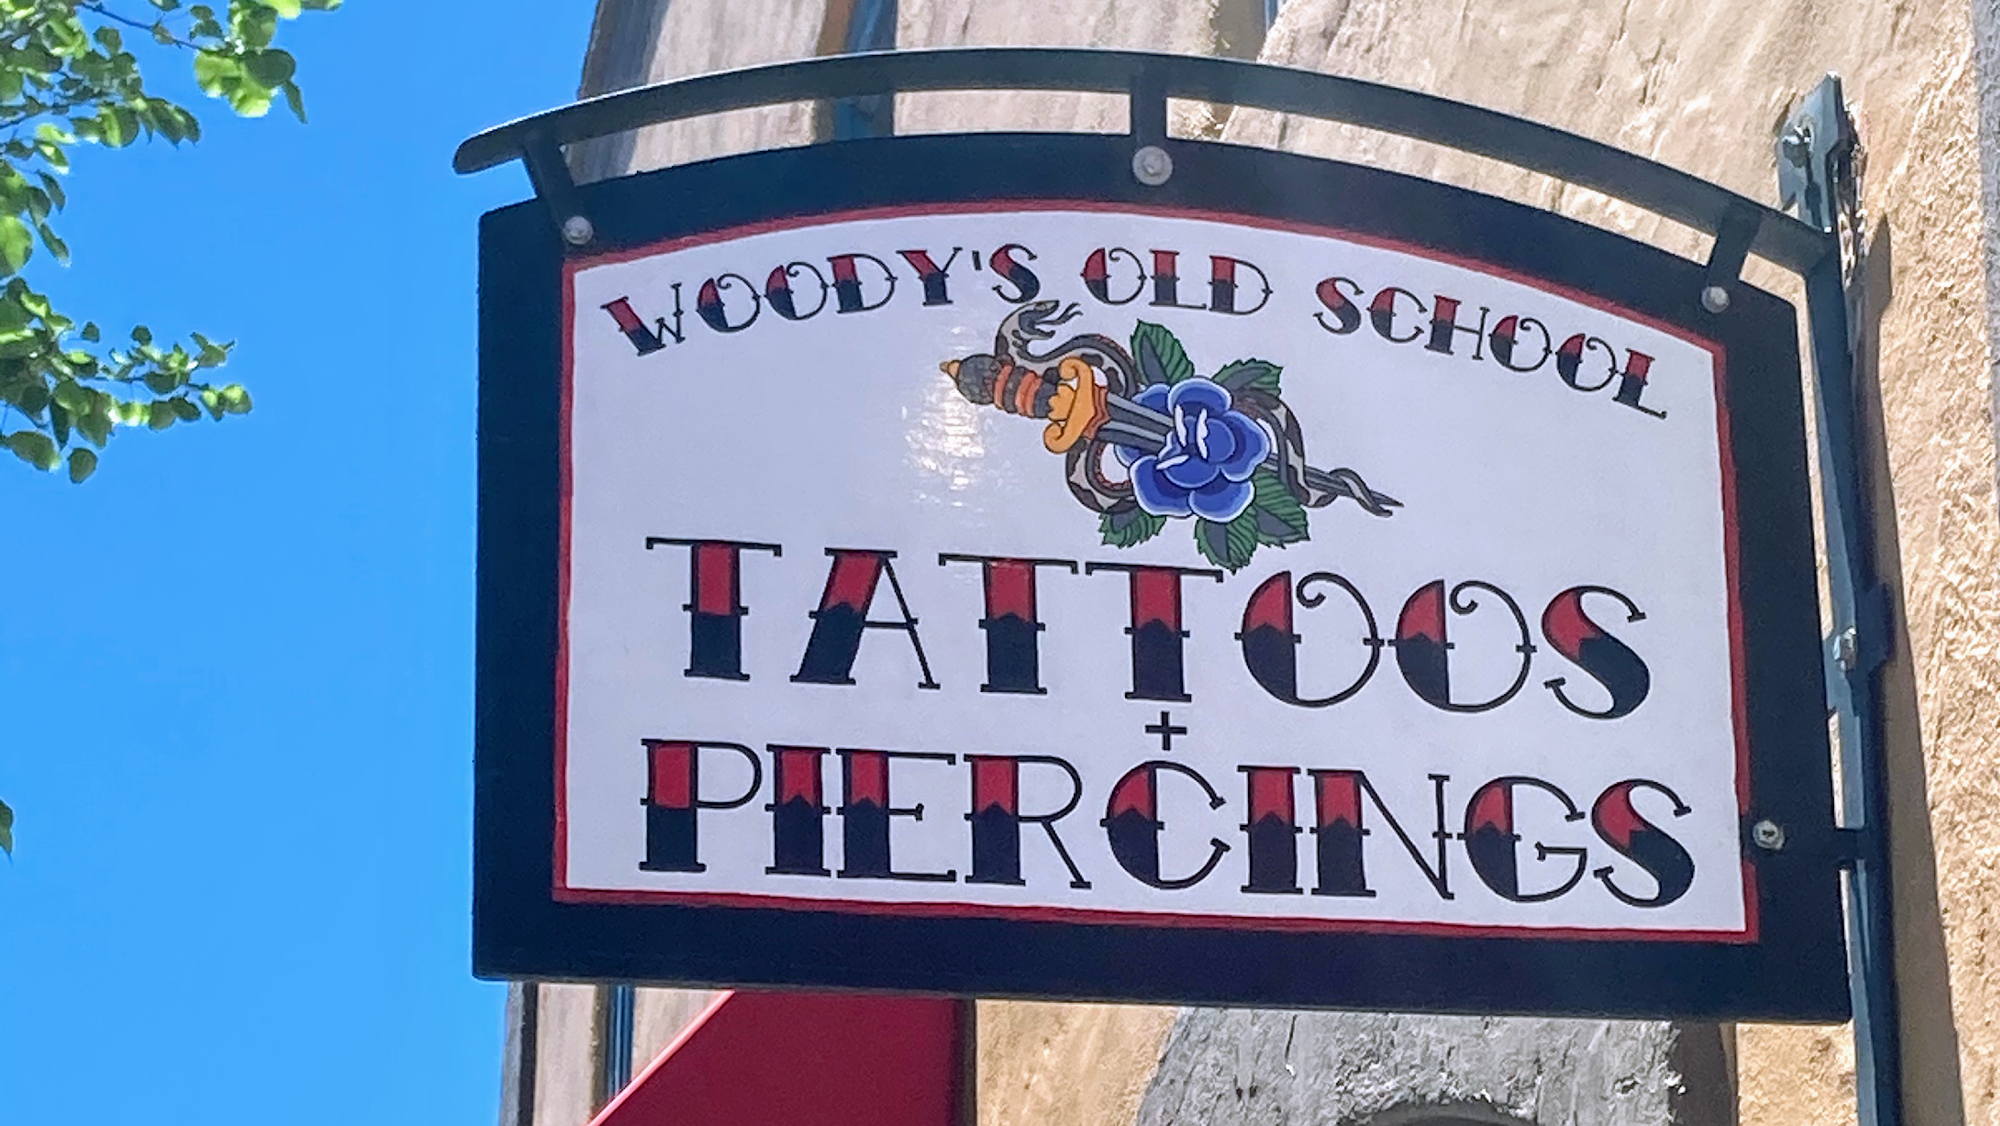 Woodys Old School Tattoos and Piercings